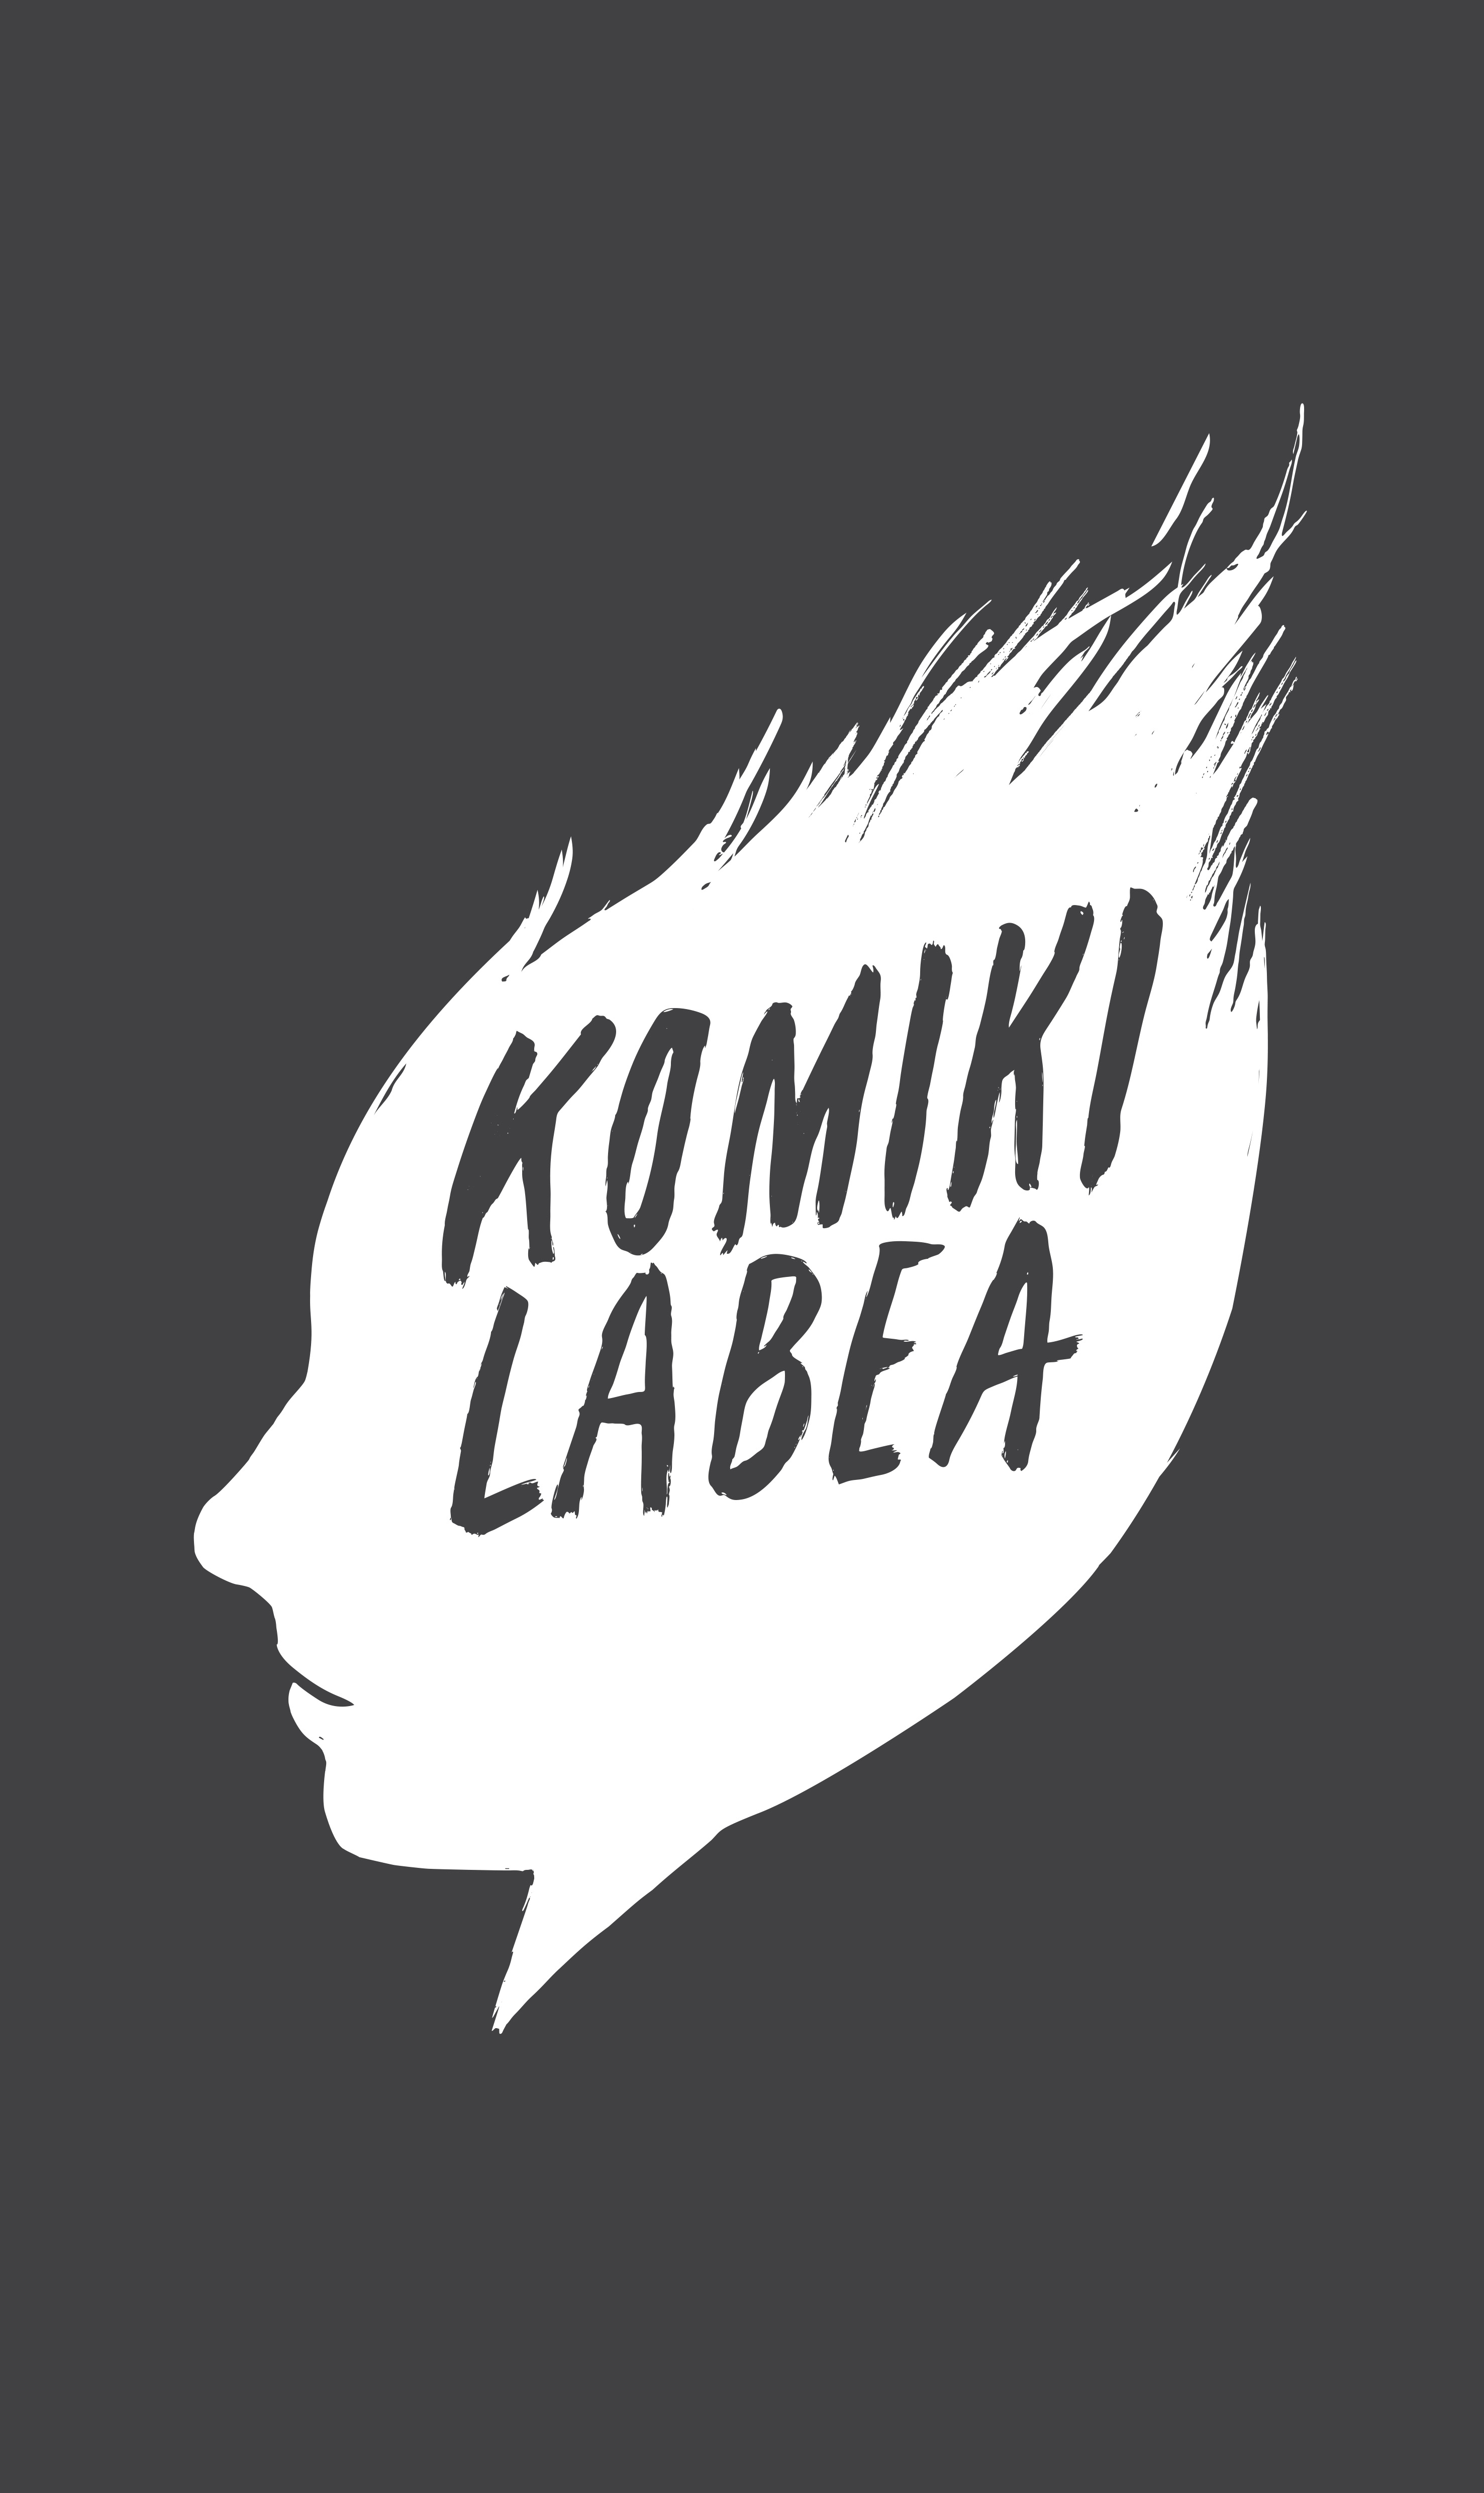 Burninghead / Komikilabea by Strogoff Komunikazioa - Creative Work